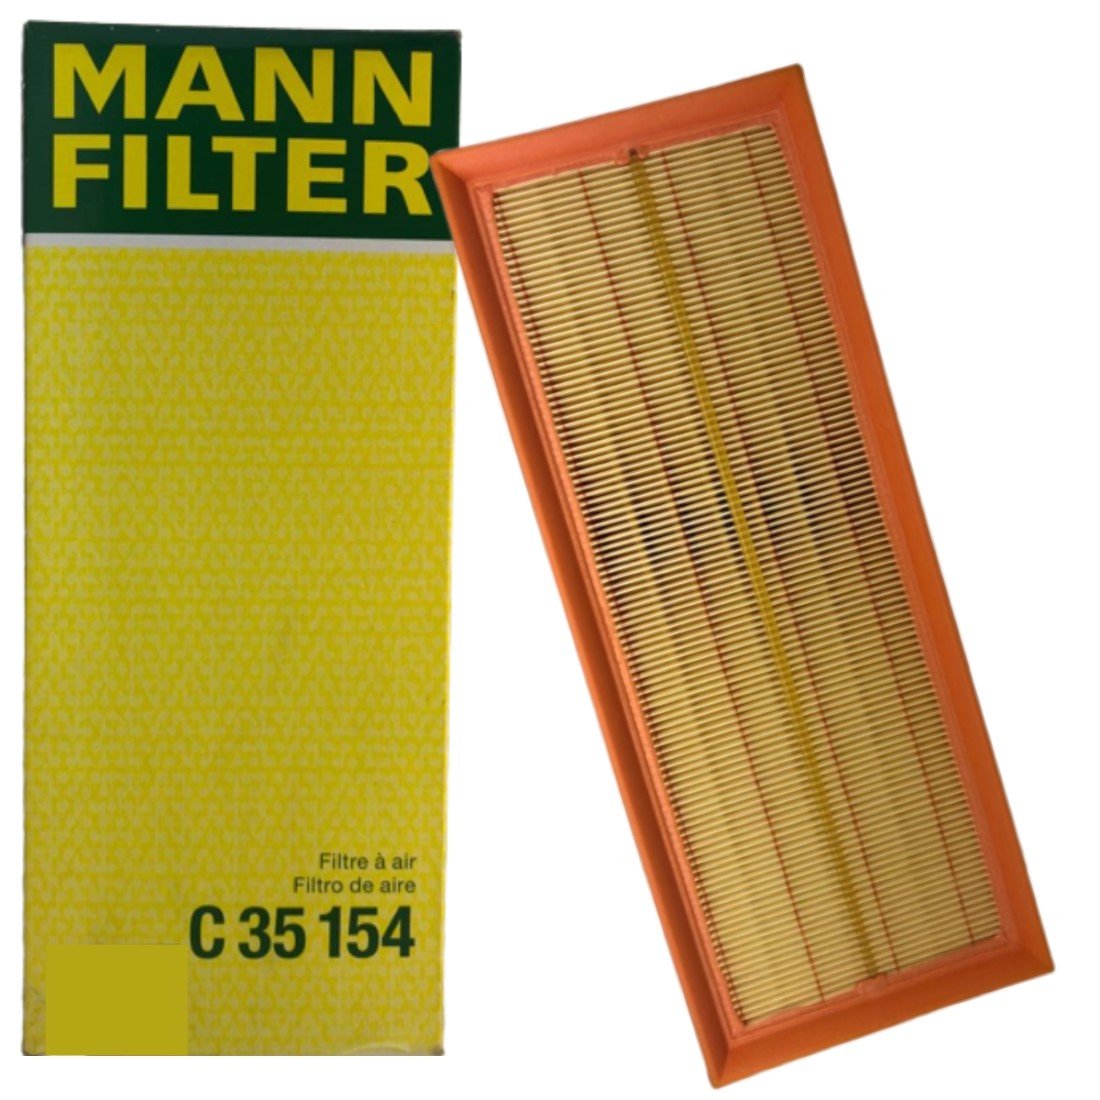 Mann-Filter - C 35 154 Filtro de aire